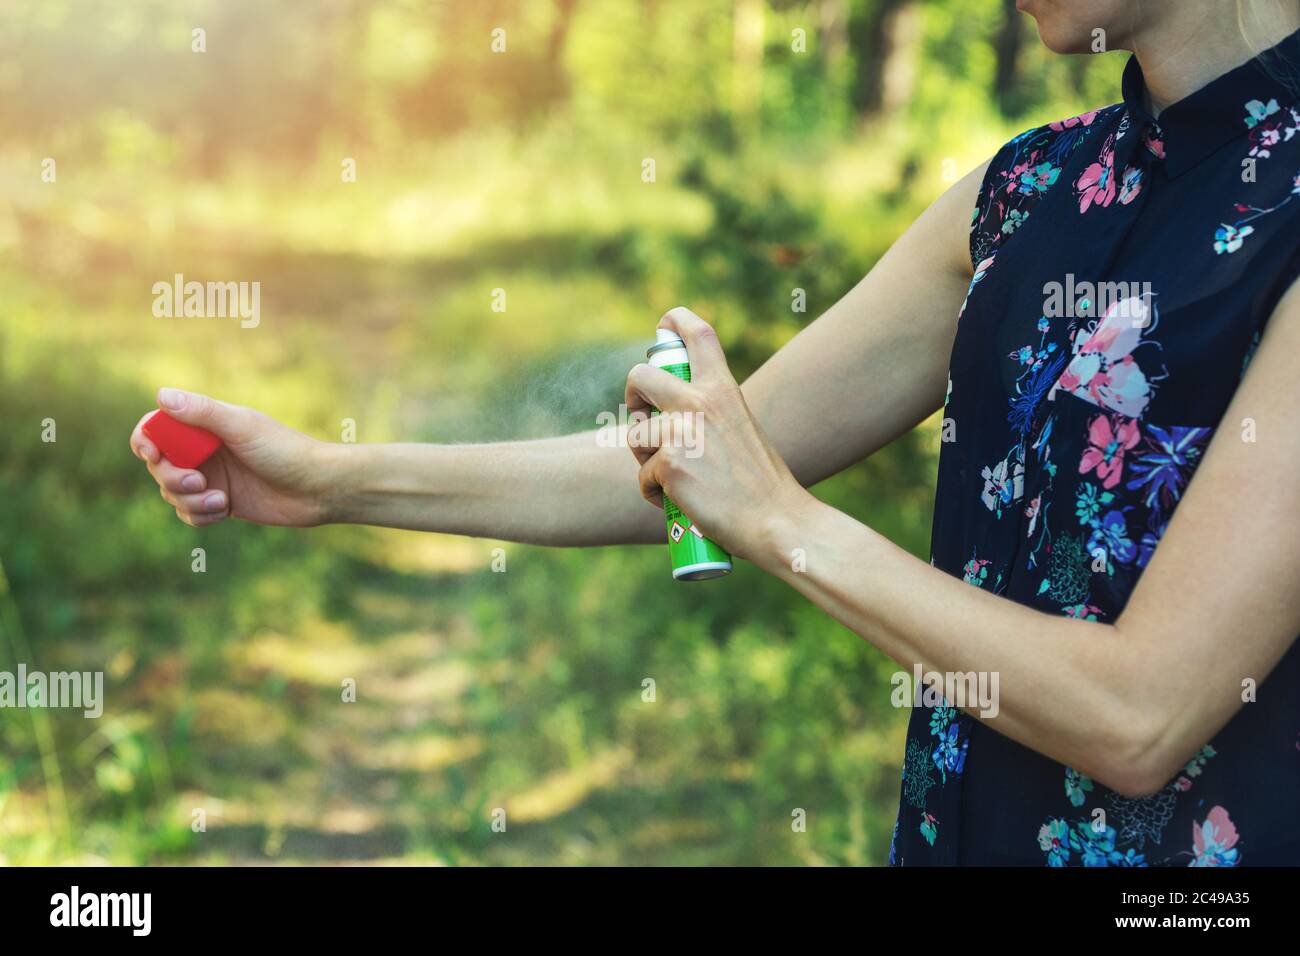 donna che spruzzano zanzara e tick repellente sul braccio nella foresta Foto Stock